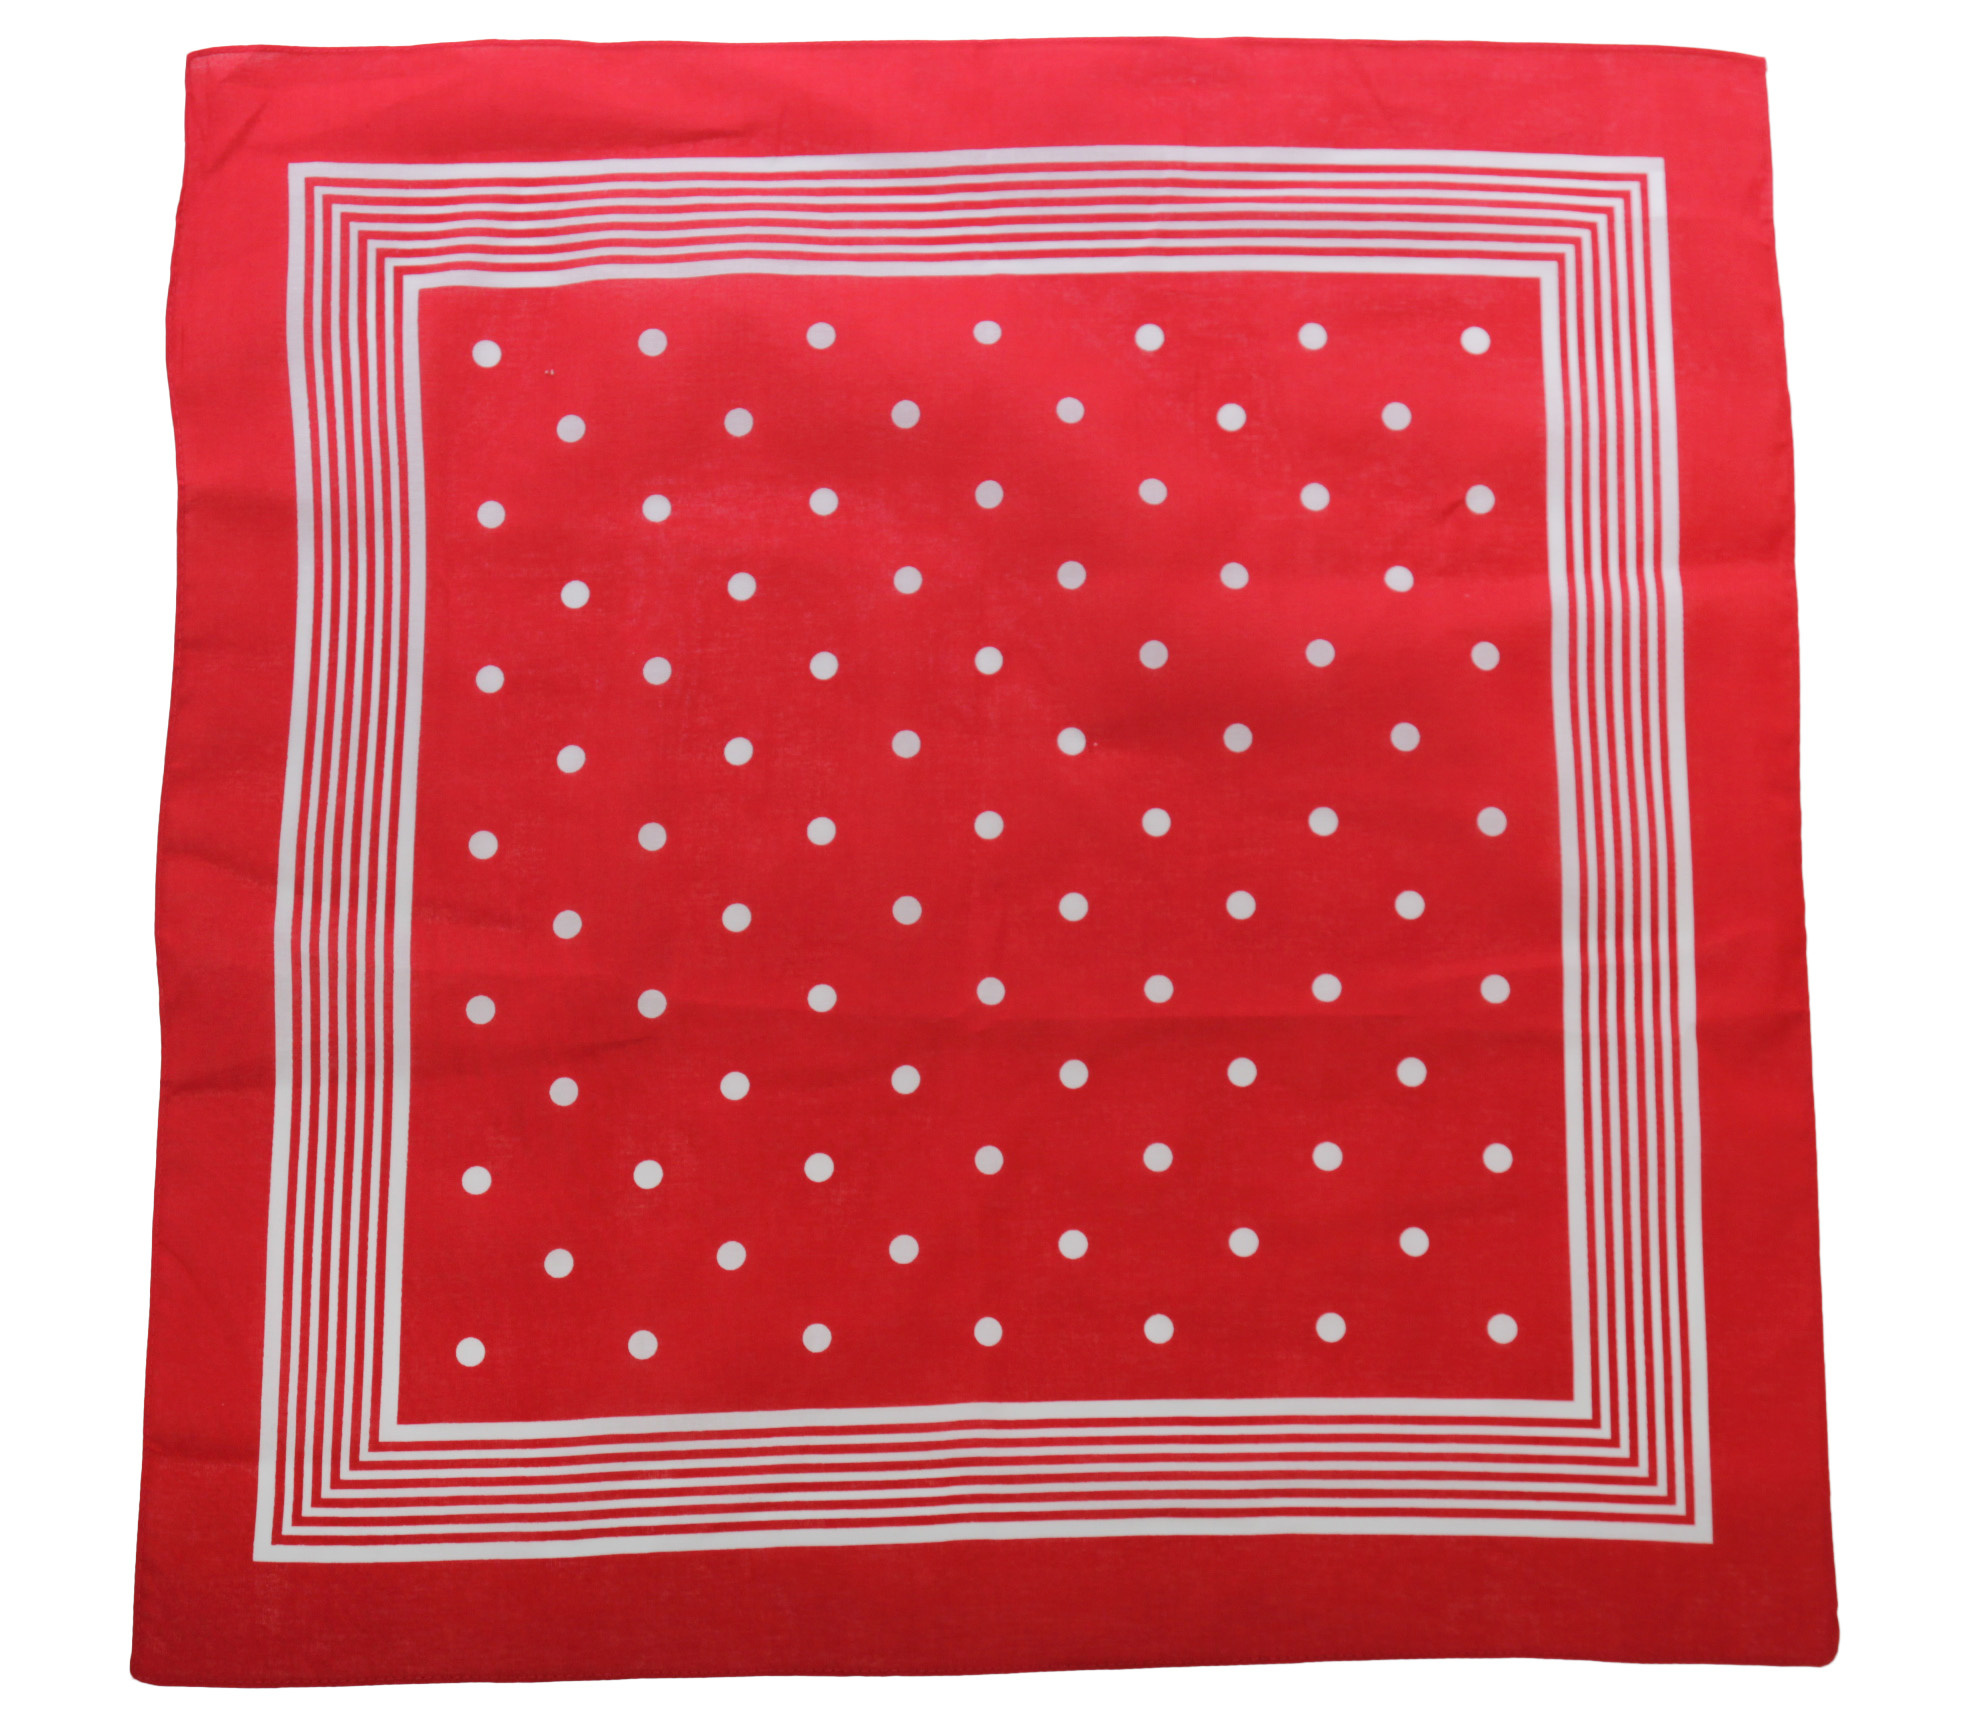 Tiseco zakdoek rood stippel 55 x 55 cm online kopen bij Sliponline - Zakdoekwinkel